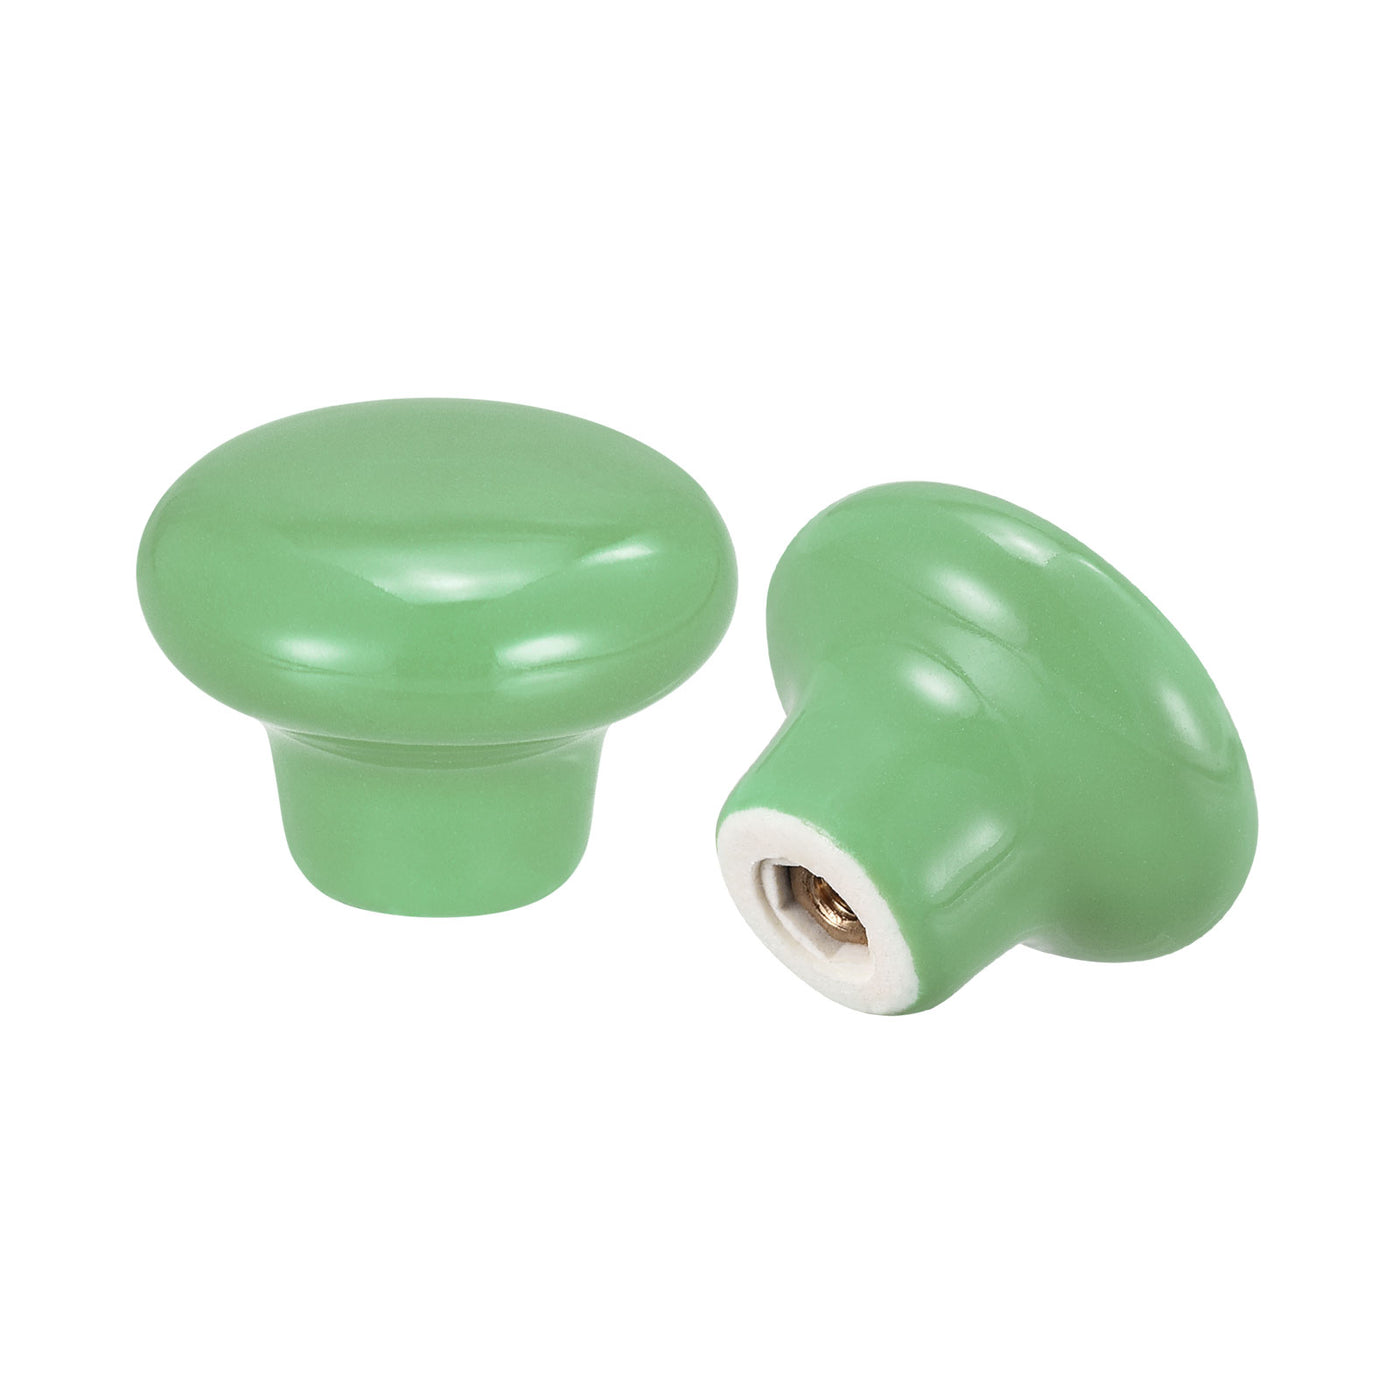 uxcell Uxcell 32x24mm Ceramic Drawer Knobs, 5pcs Mushroom Shape Door Pull Handles Green